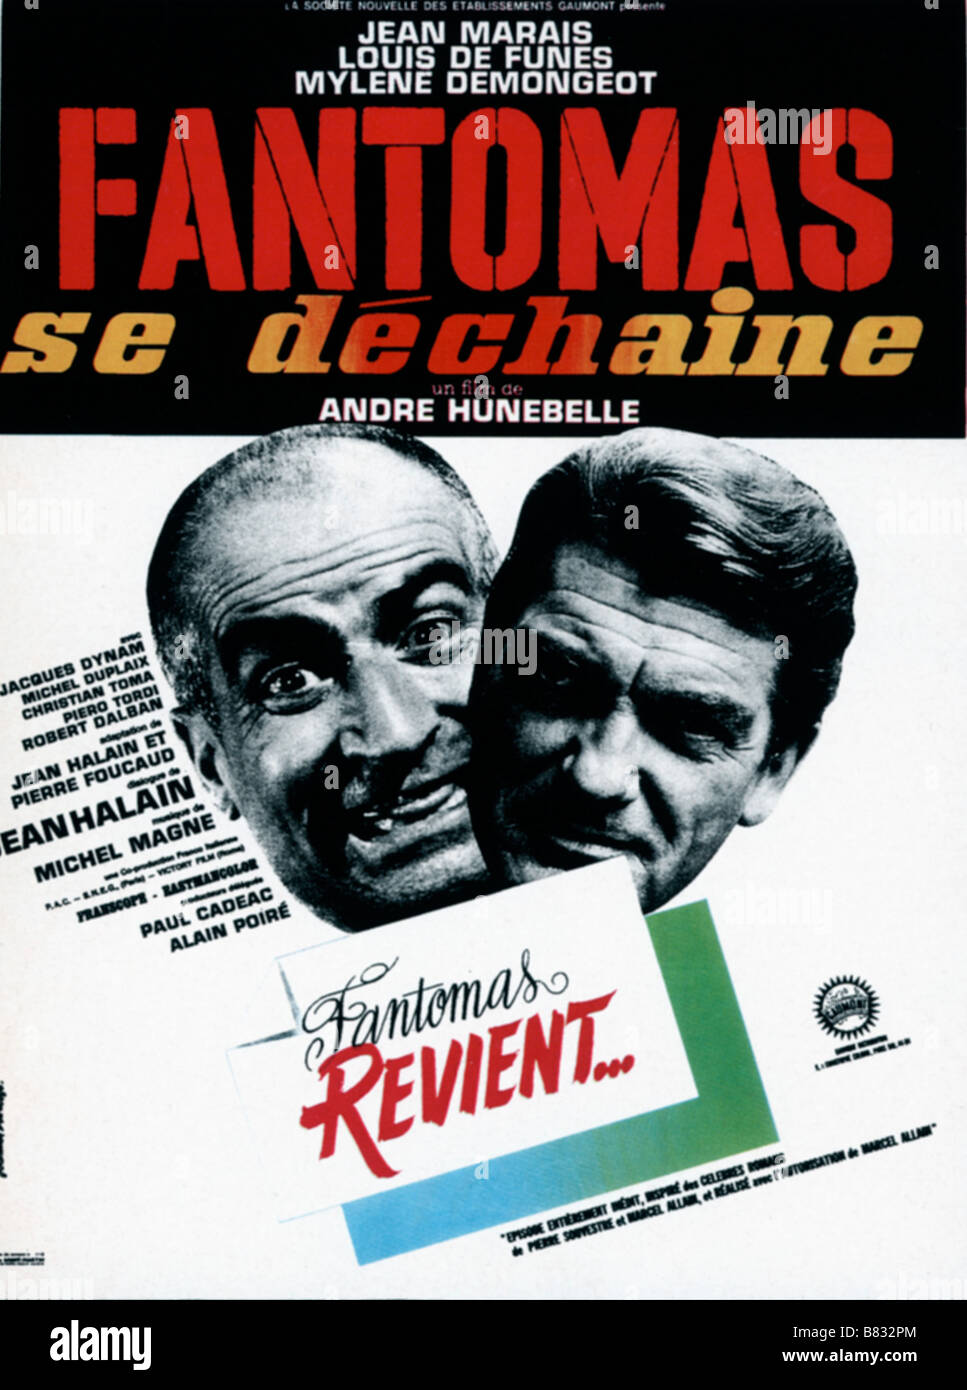 Louis de Funès Jean Marais affiche poster Directors André Hunebelle Haroun  Tazieff Stock Photo - Alamy